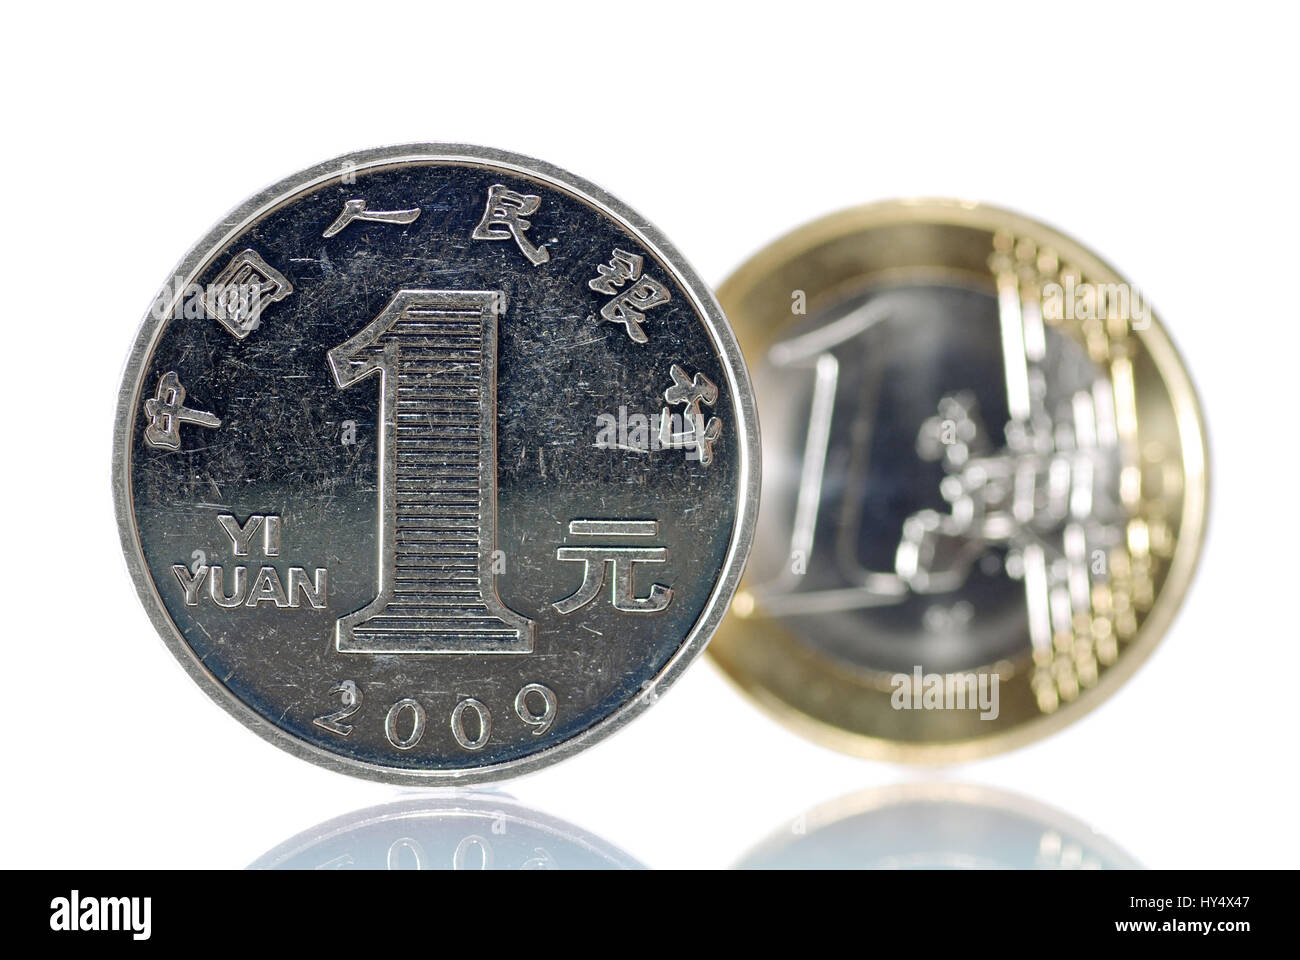 Una moneda yuan, moneda china, antes de que una moneda de euro, el desarrollo económico en China y Europa, Ein-Yuan-Muenze , chinesische Waehrung, vor einer Foto de stock